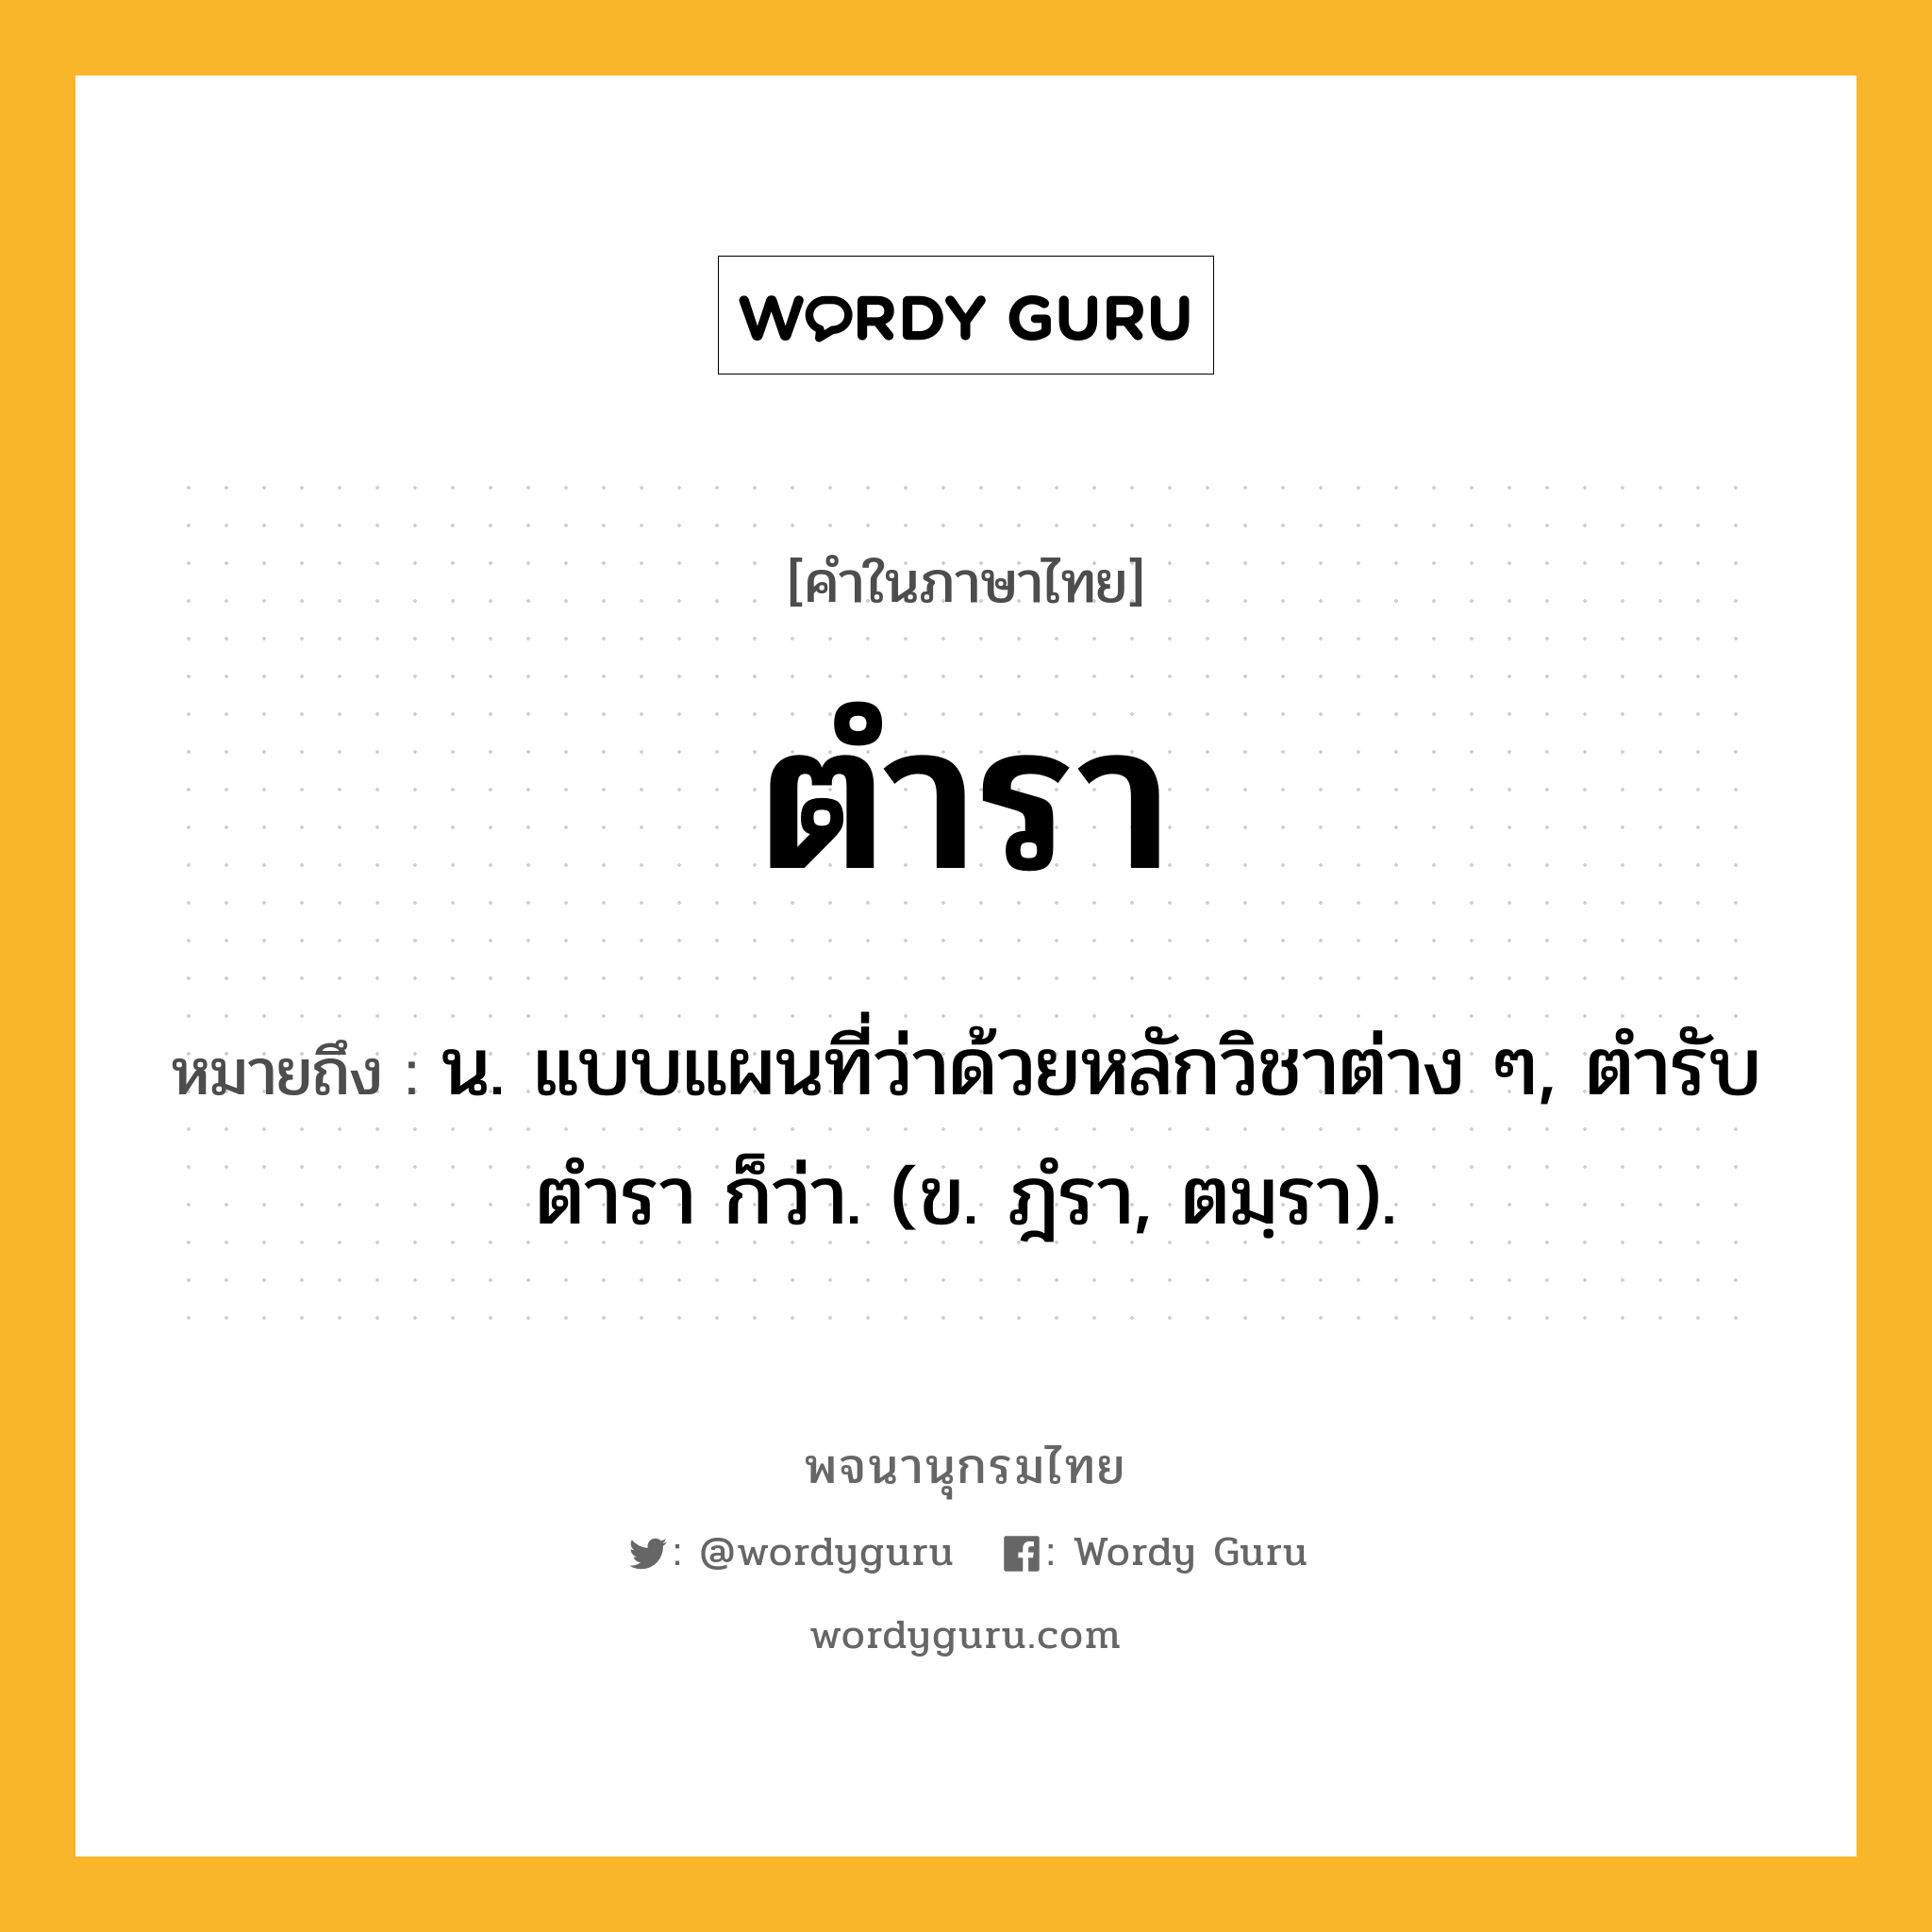 ตำรา หมายถึงอะไร?, คำในภาษาไทย ตำรา หมายถึง น. แบบแผนที่ว่าด้วยหลักวิชาต่าง ๆ, ตํารับตํารา ก็ว่า. (ข. ฎํรา, ตมฺรา).